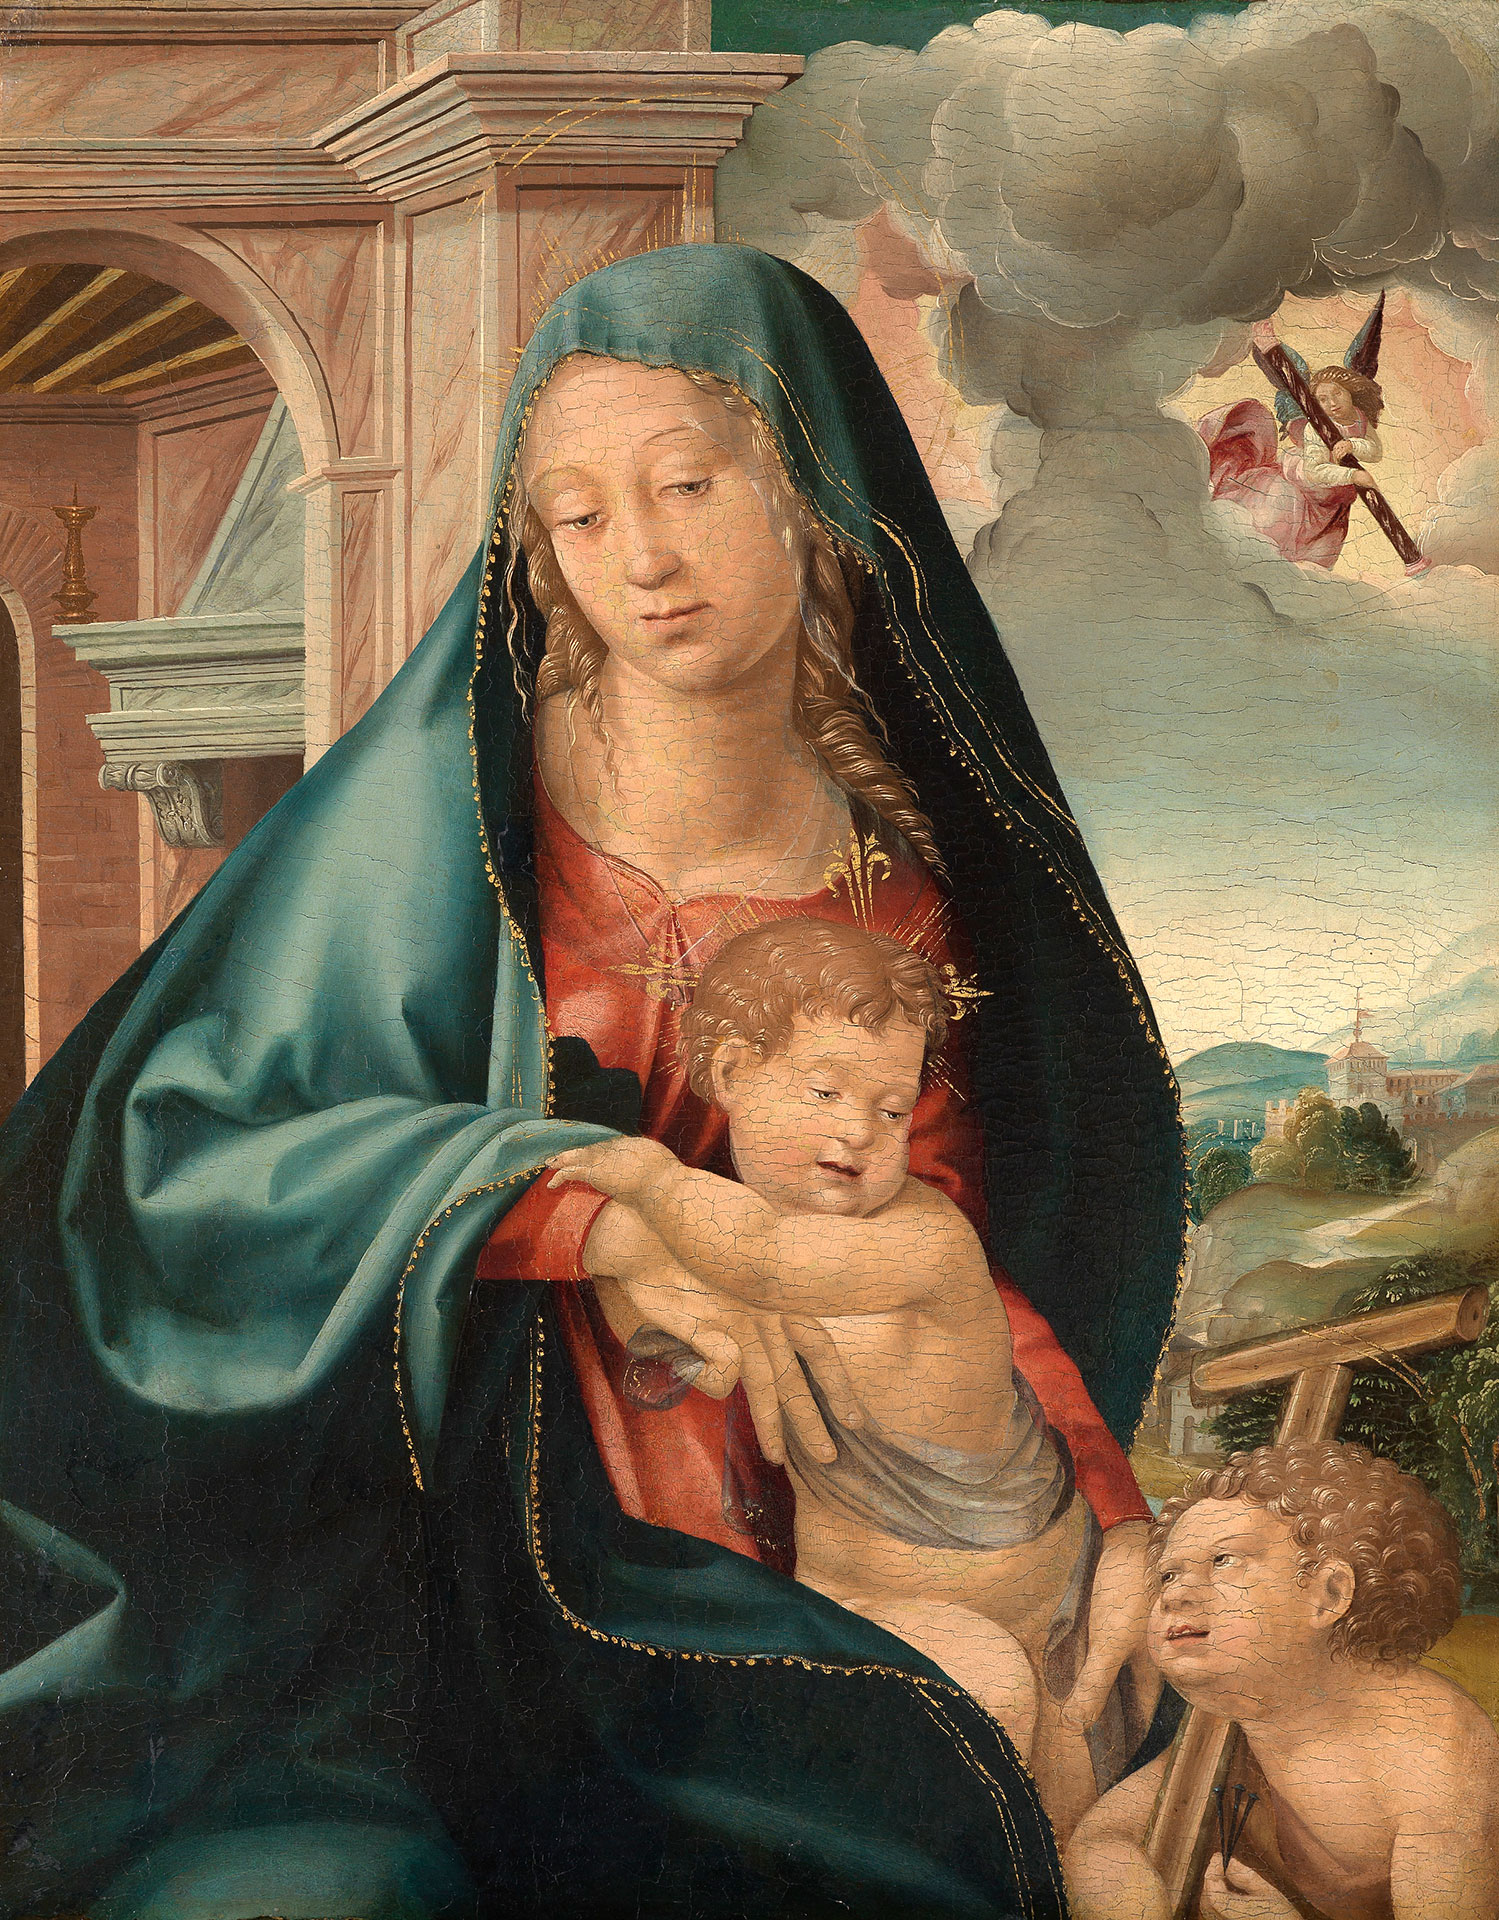 Abbildung des Werks "Maria mit dem Kind und dem Johannesknaben" von Jörg Breu dem Älteren, entstanden um 1520. Maria hat das Jesukind auf ihrem Arm. Vor ihr kniet ein anderes Kind und schaut Jesus an. 